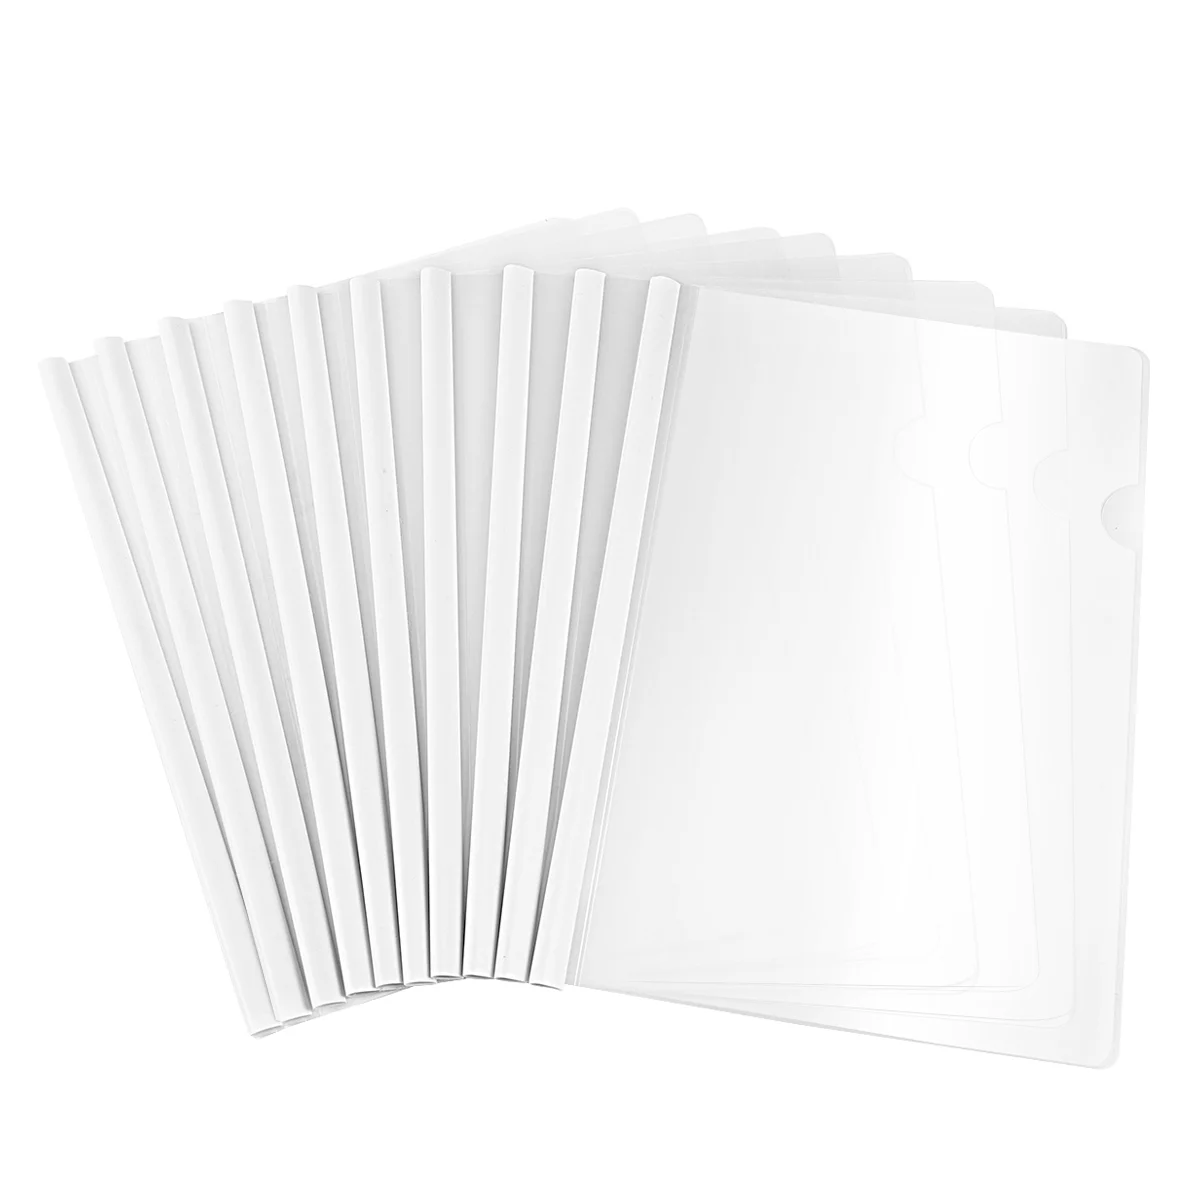 

Пластиковые бумажные рукава, 10 накладок на скользящие полосы, прозрачные чехлы для презентаций, папки для файлов, органайзер, папка для бумаги формата А4